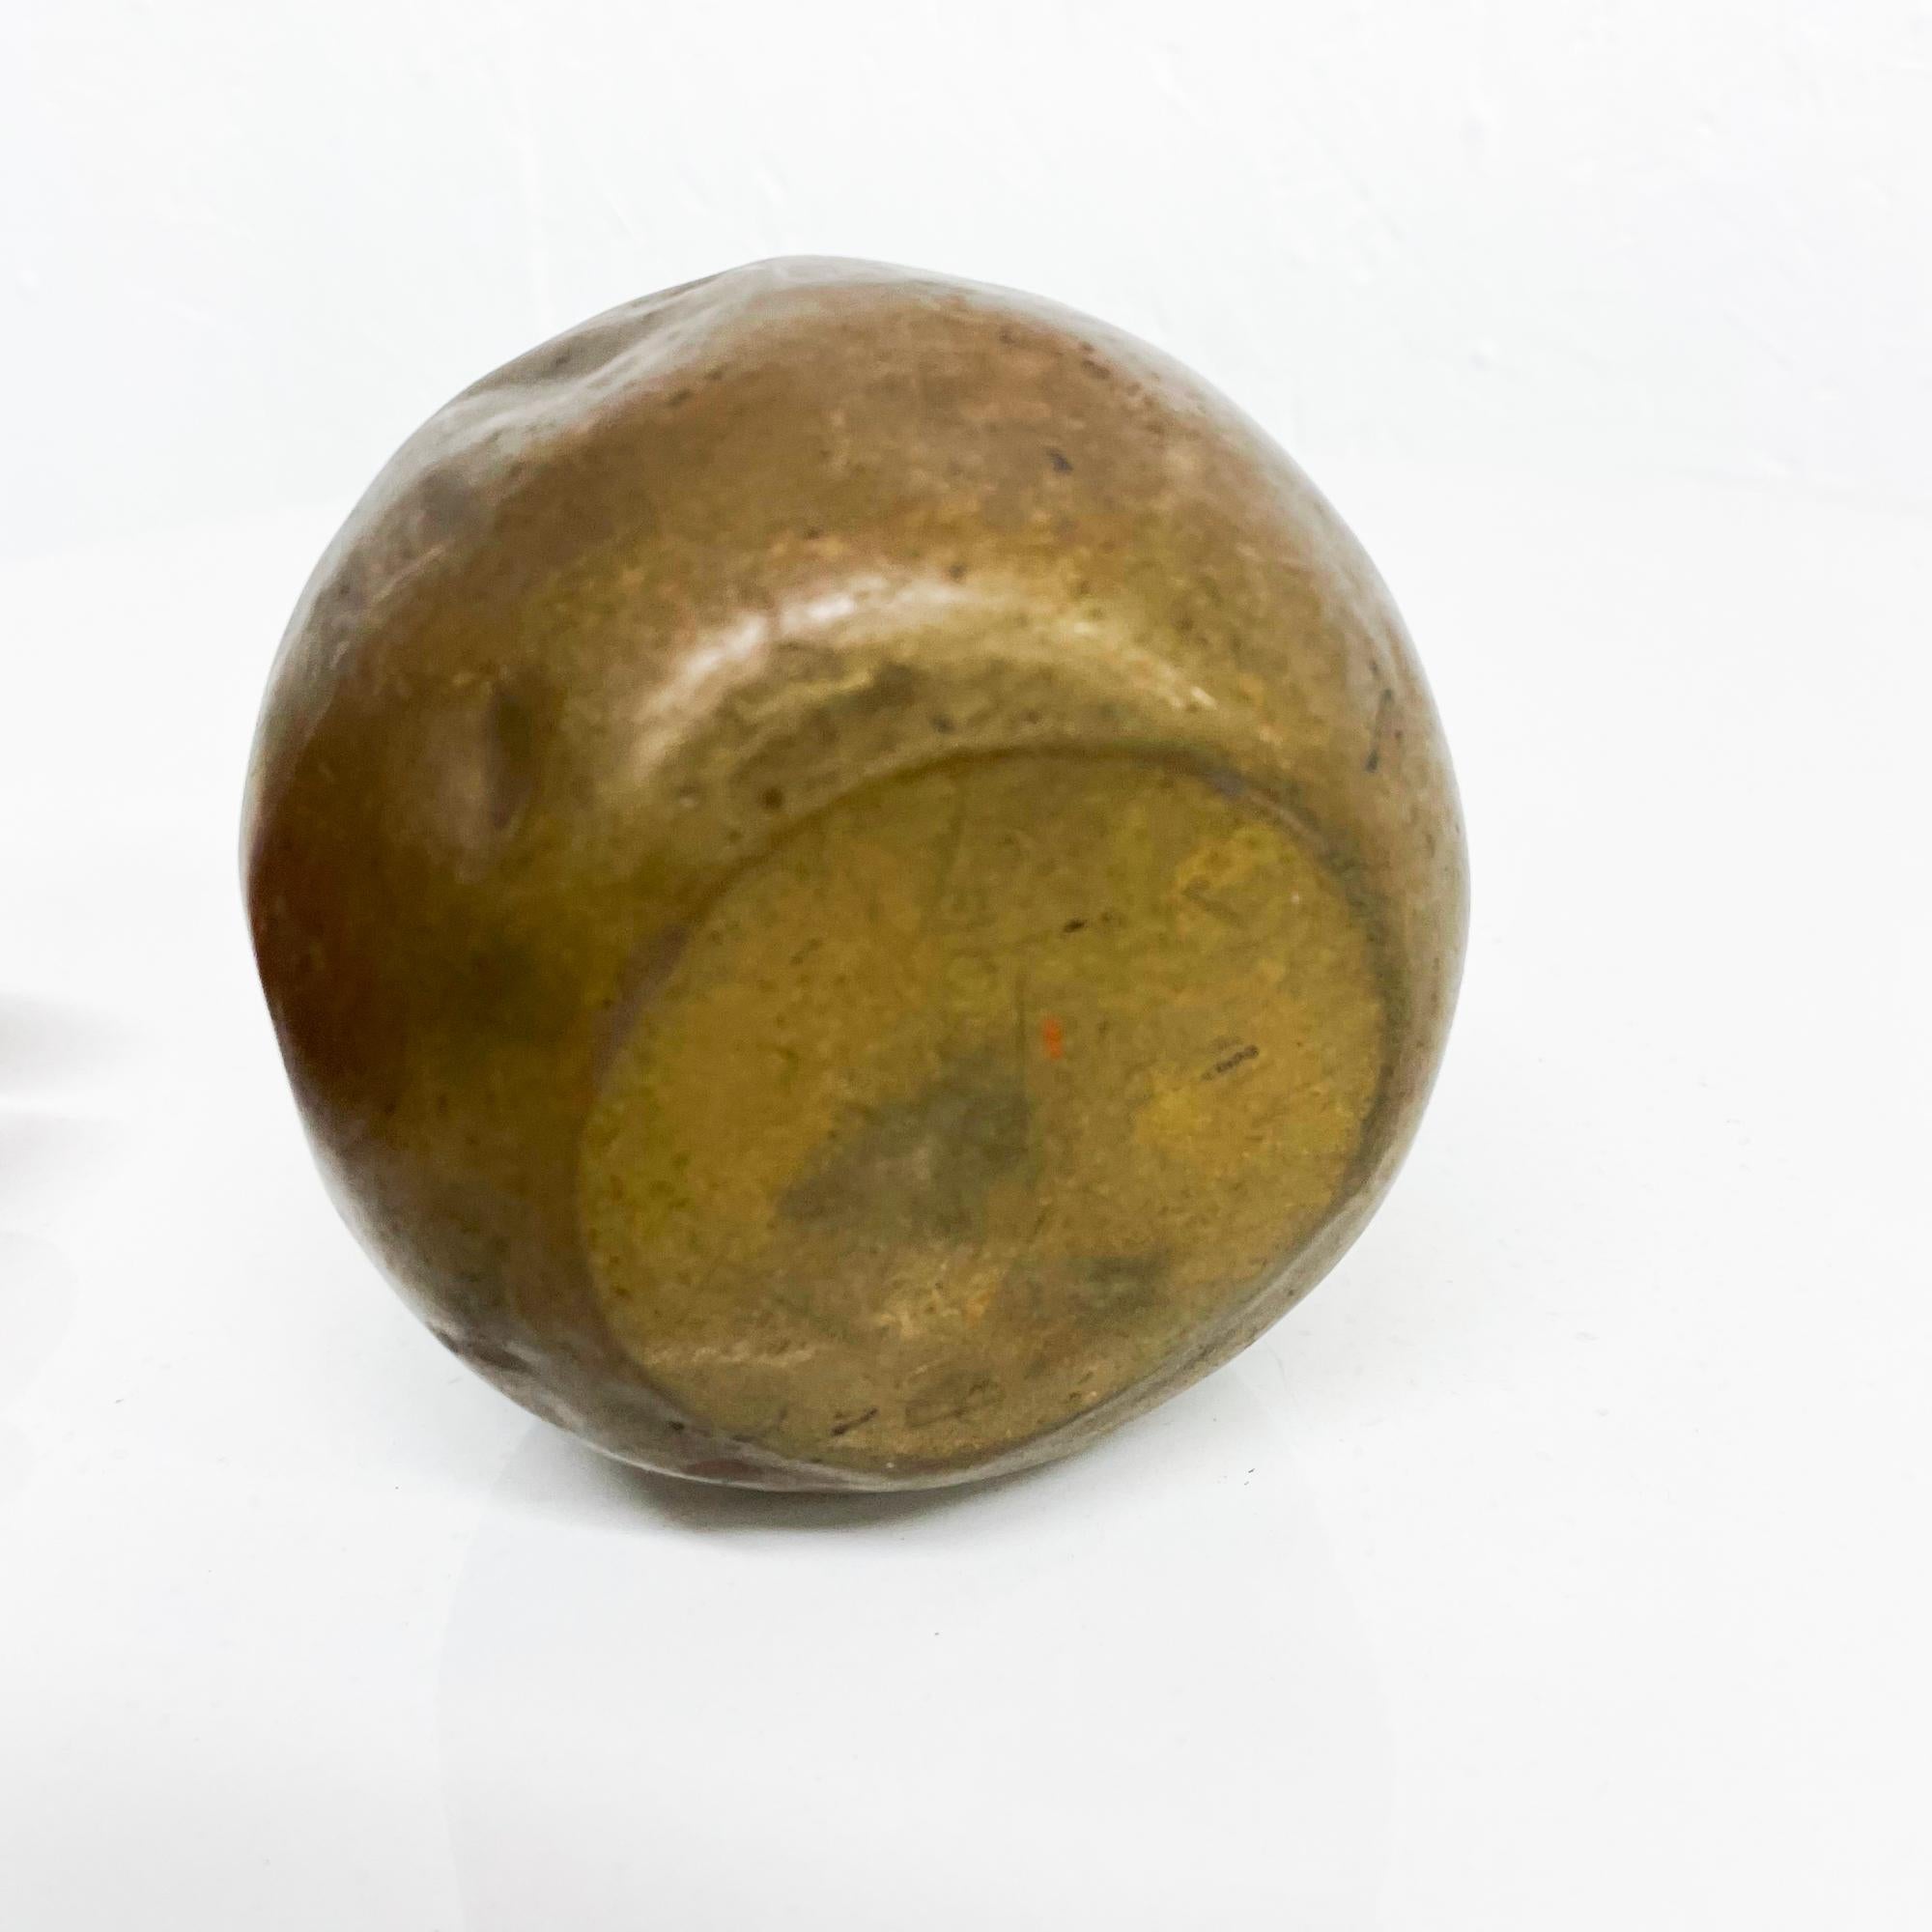 Patinated Brass Apple Shaped Vessel Flower Bud Vase or Pen Holder Desk Accessory 1